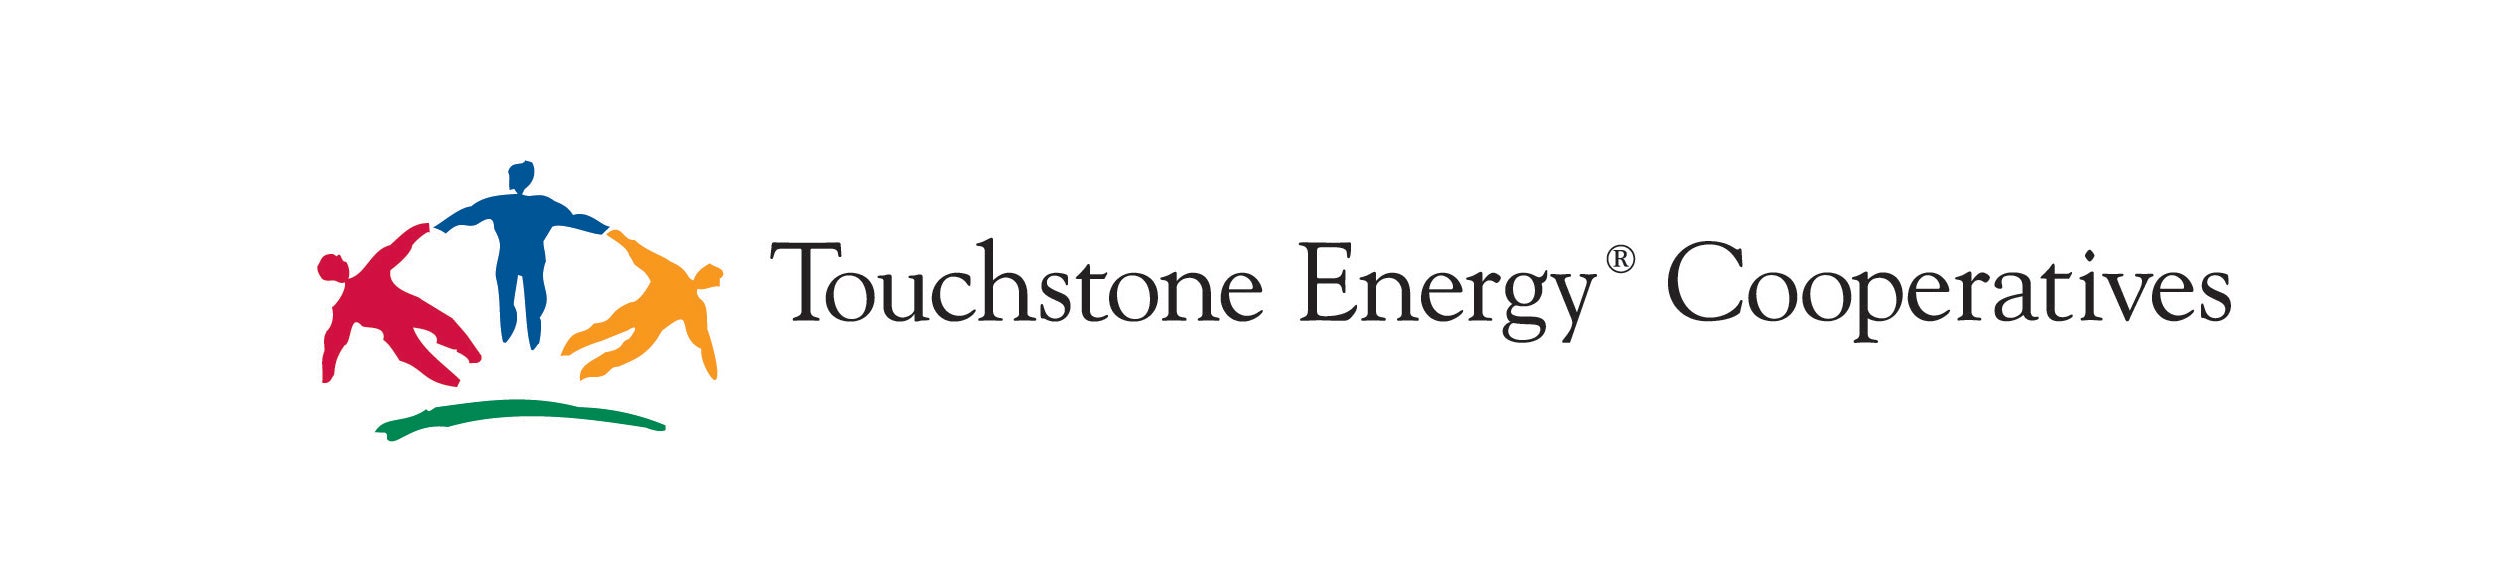 Touchstone logo 